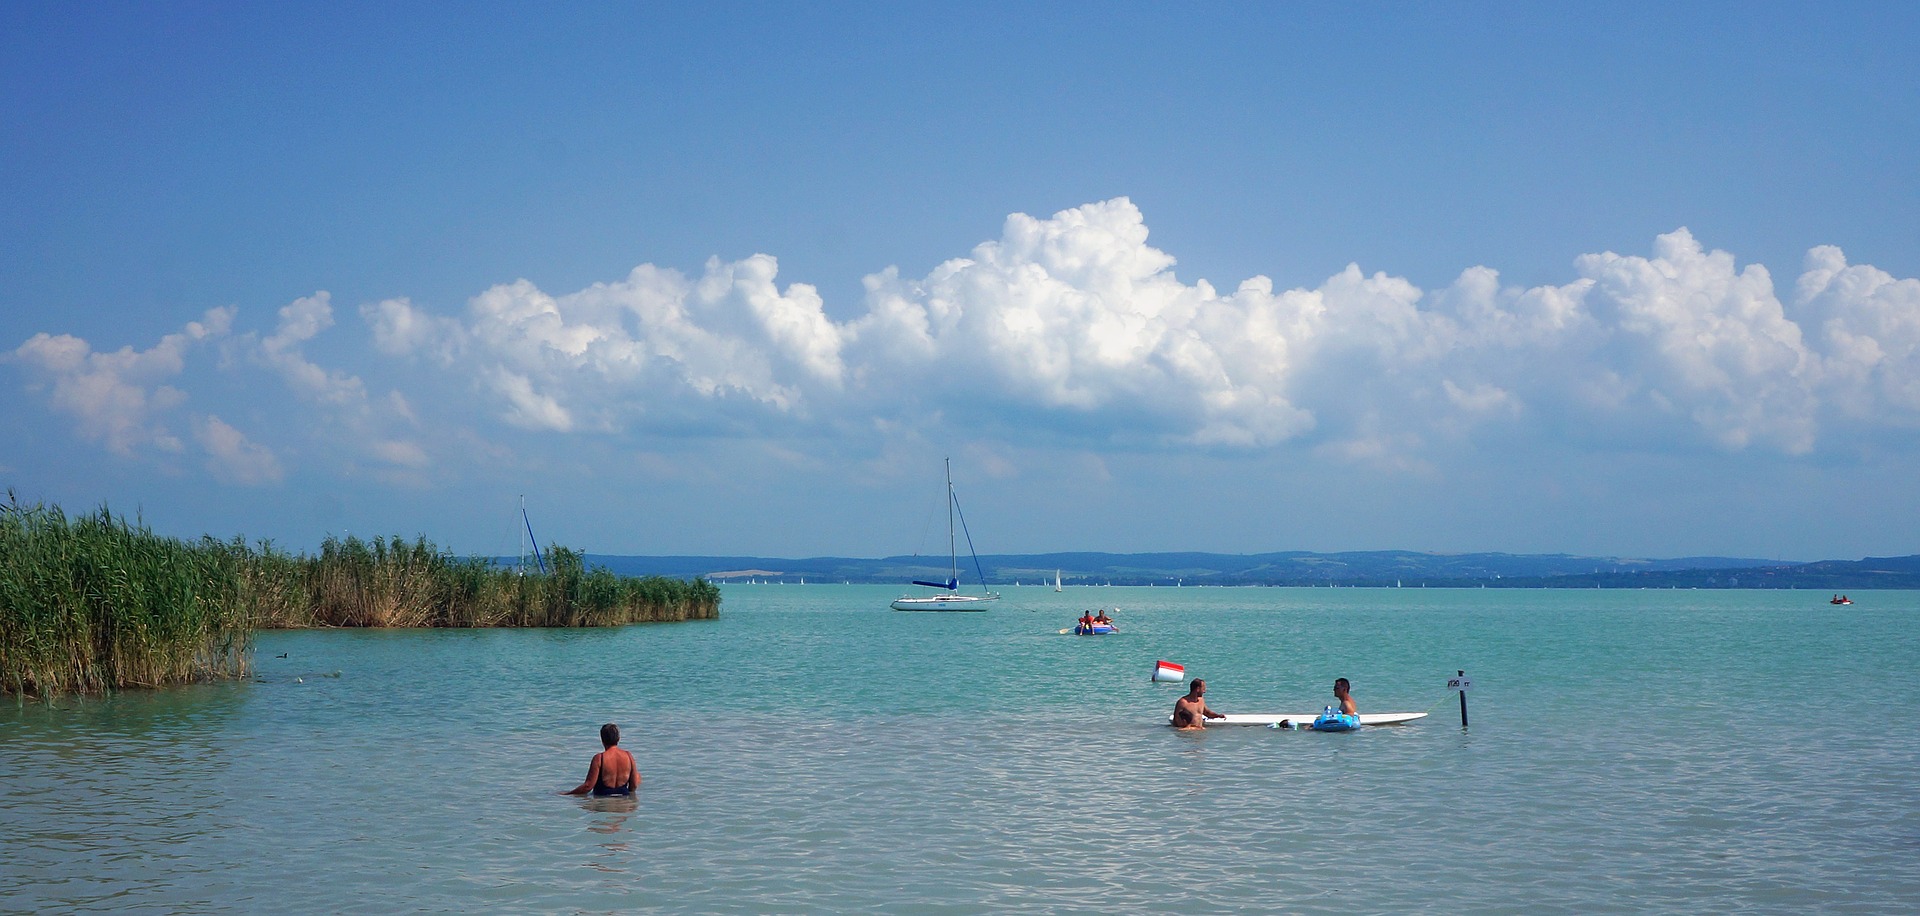 balaton-lake-waterfront-1595456_1920-pixabay.jpg (380 KB)